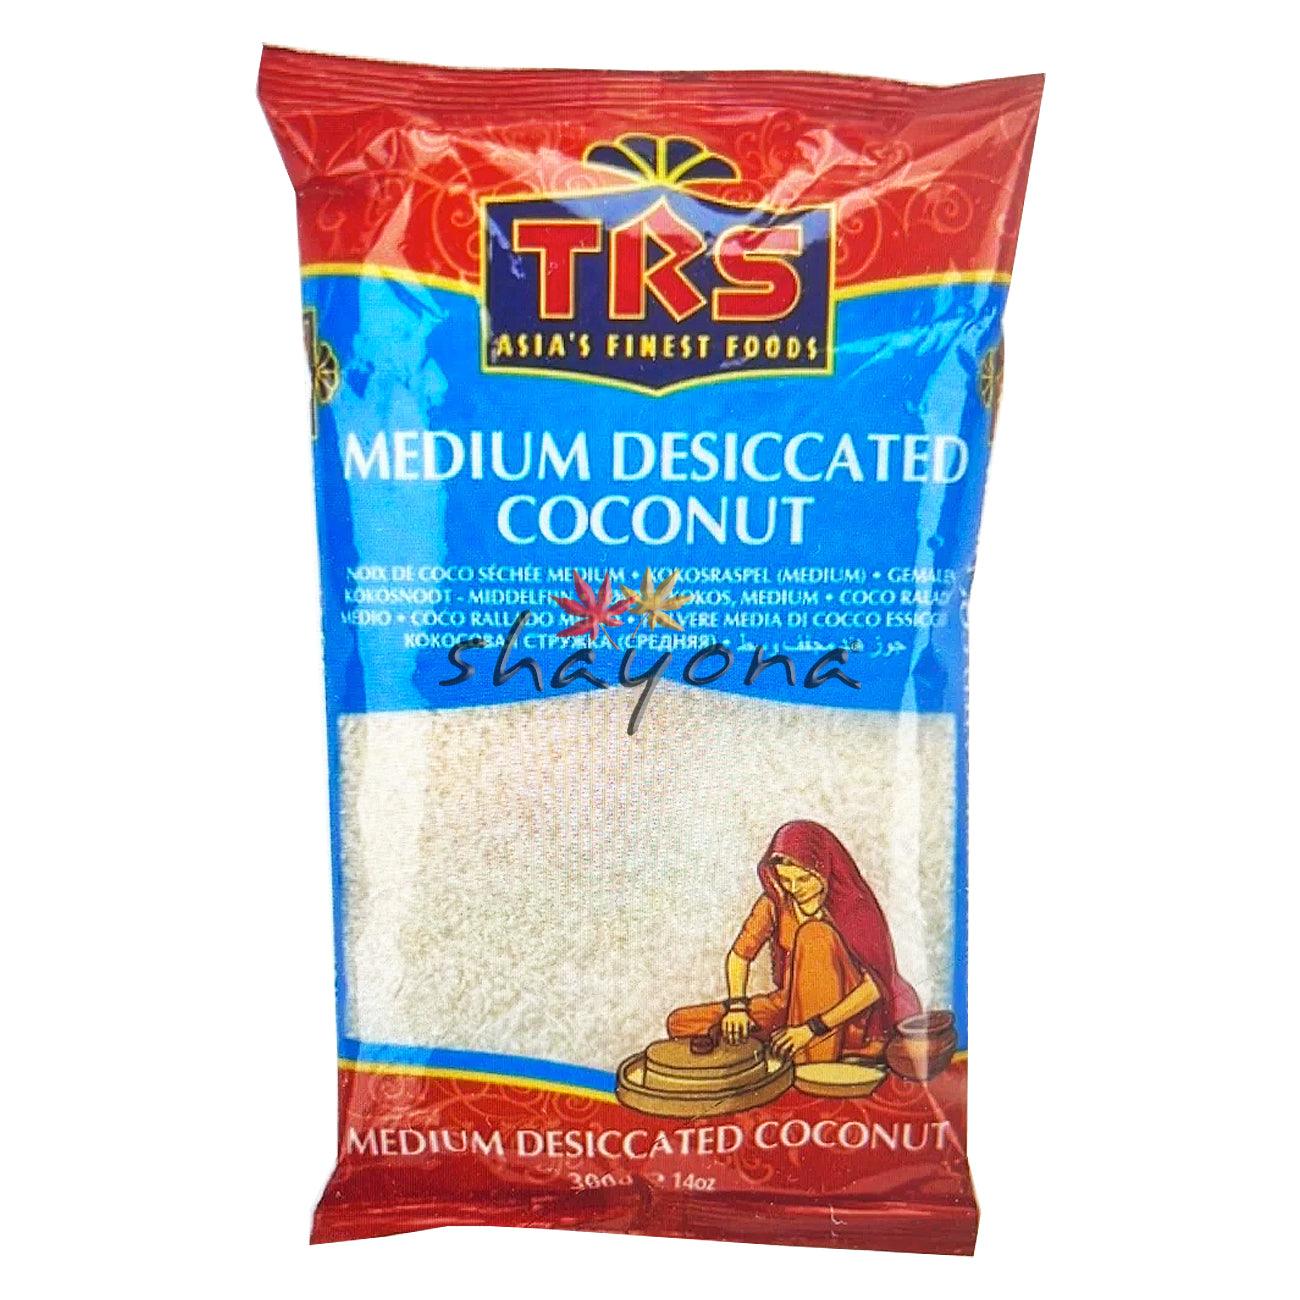 TRS Desiccated Coconut Medium - Shayona UK